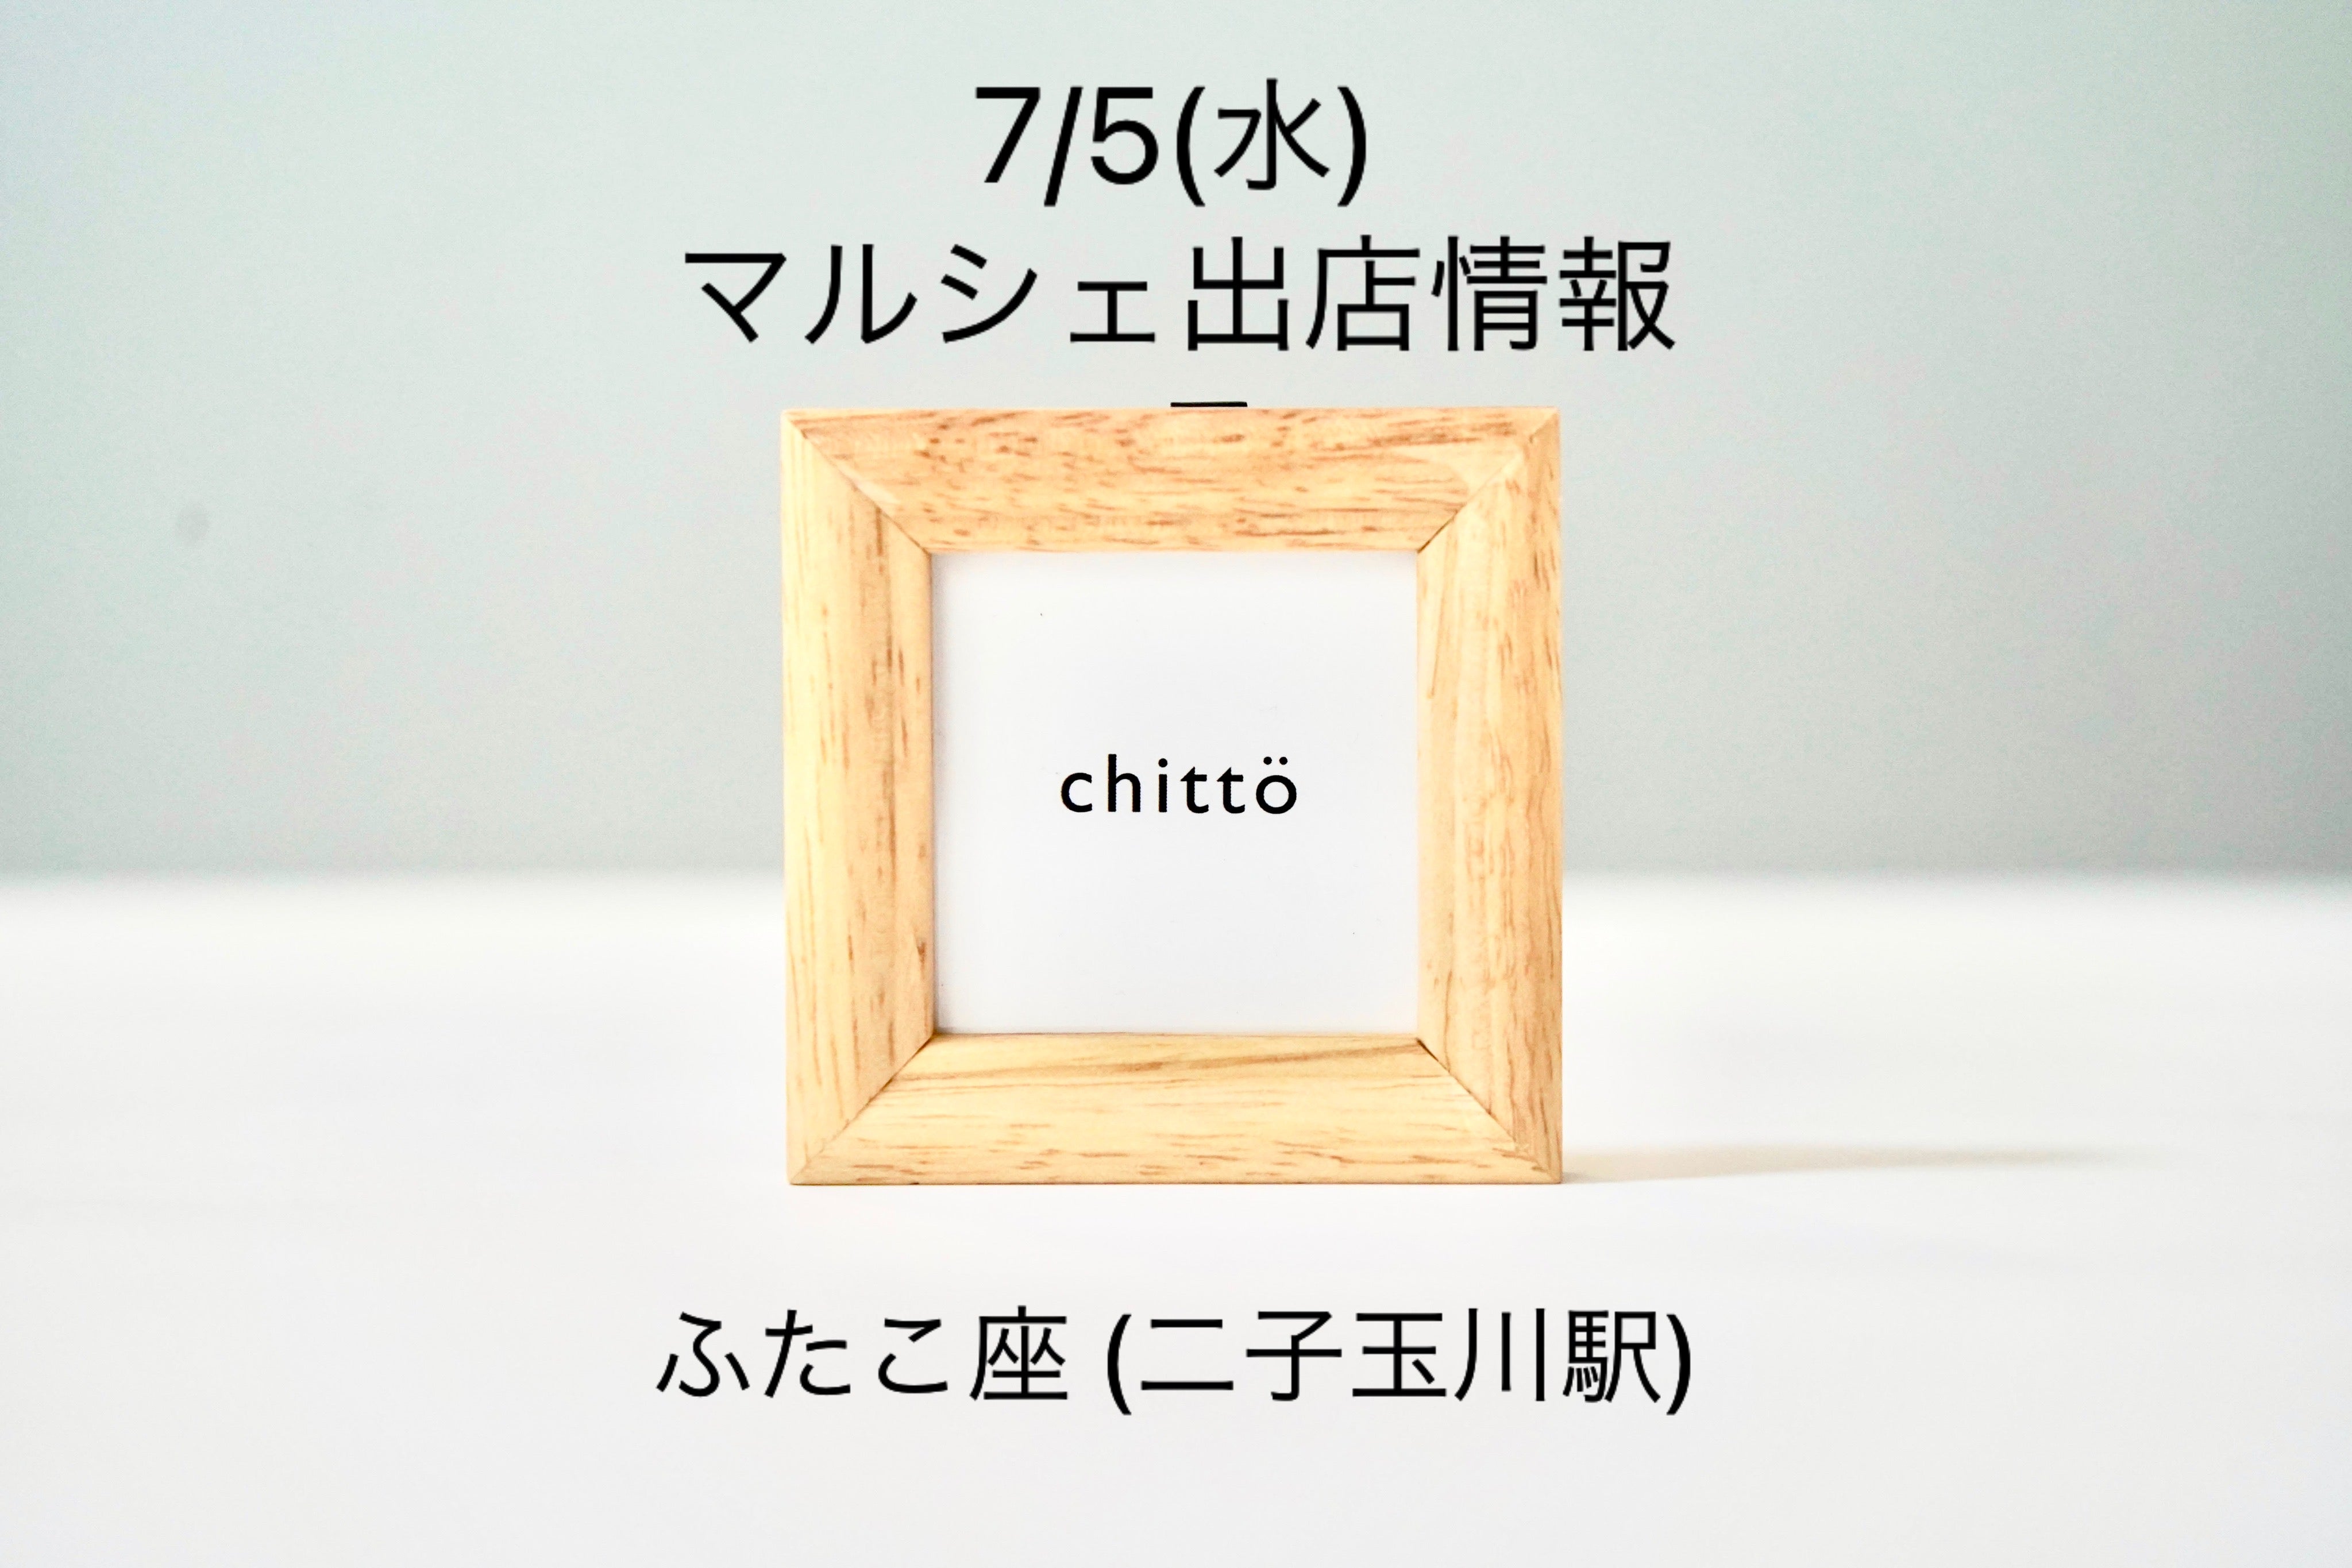 7/5 (Wednesday) Marche stall! [Futako Tamagawa (Tokyo)/Gitakoza 